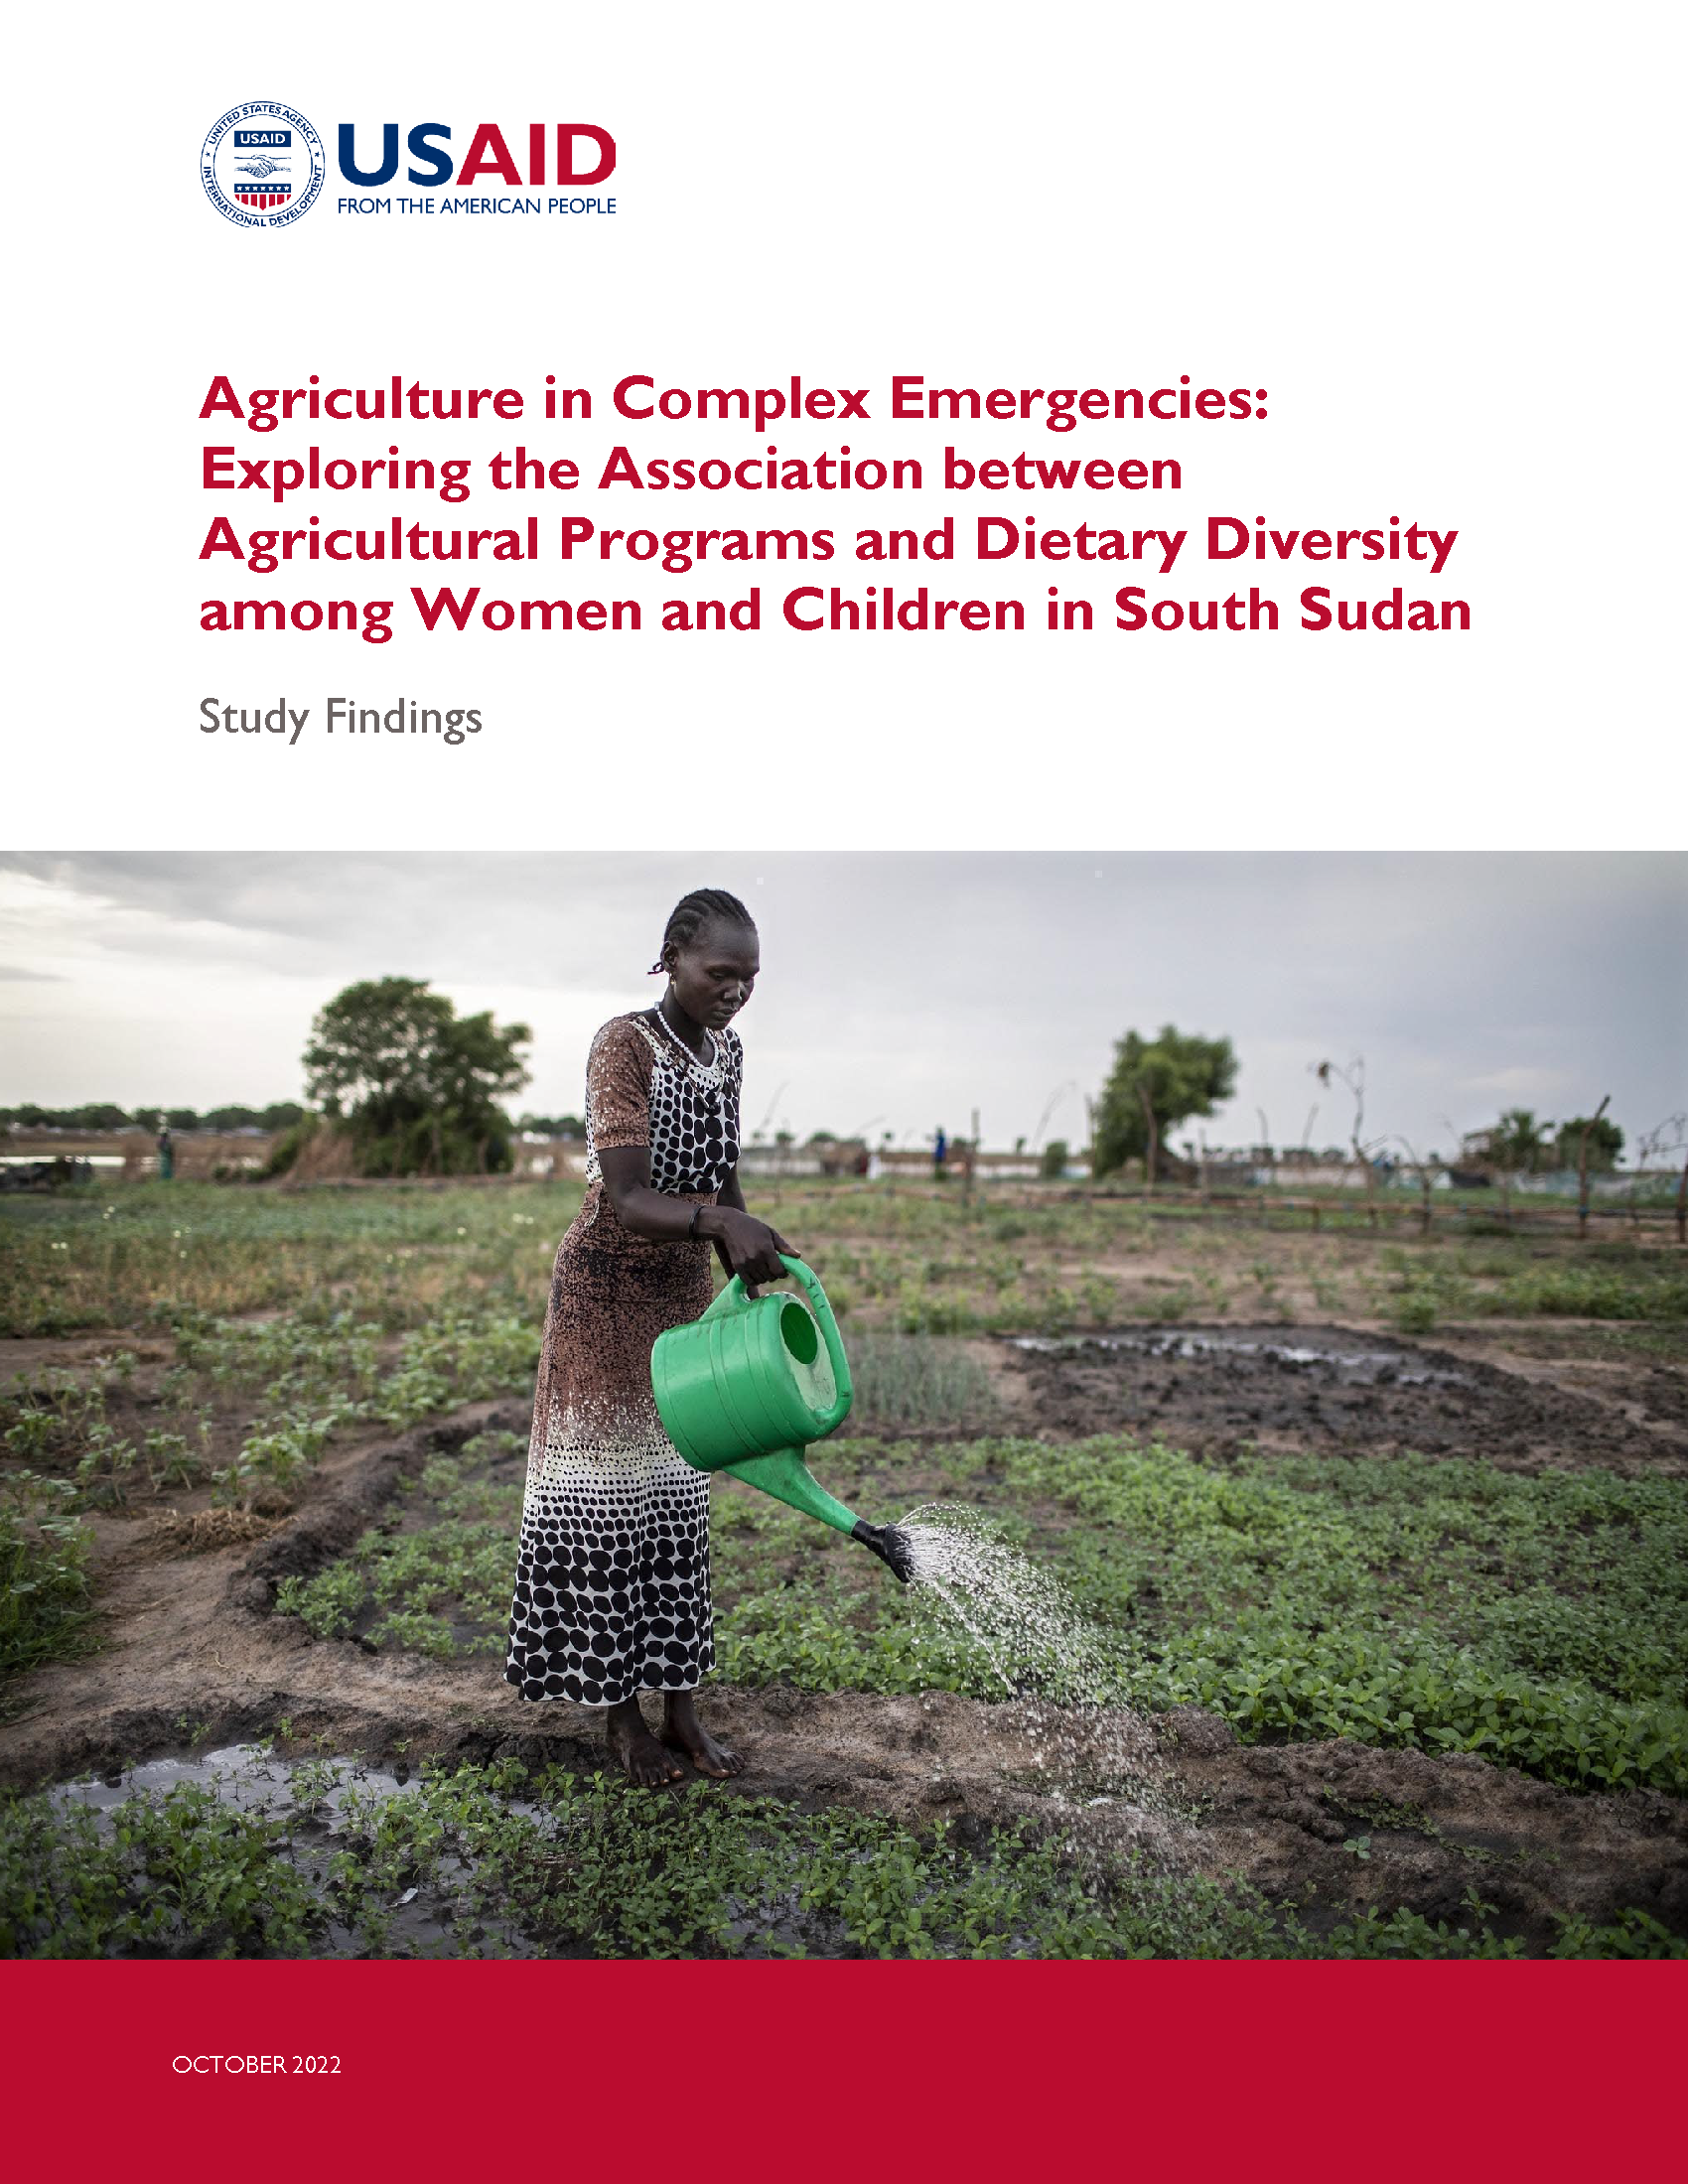 Page de couverture de L'agriculture dans les situations d'urgence complexes : Explorer l'association entre les programmes agricoles et la diversité alimentaire chez les femmes et les enfants au Soudan du Sud : résultats de l'étude